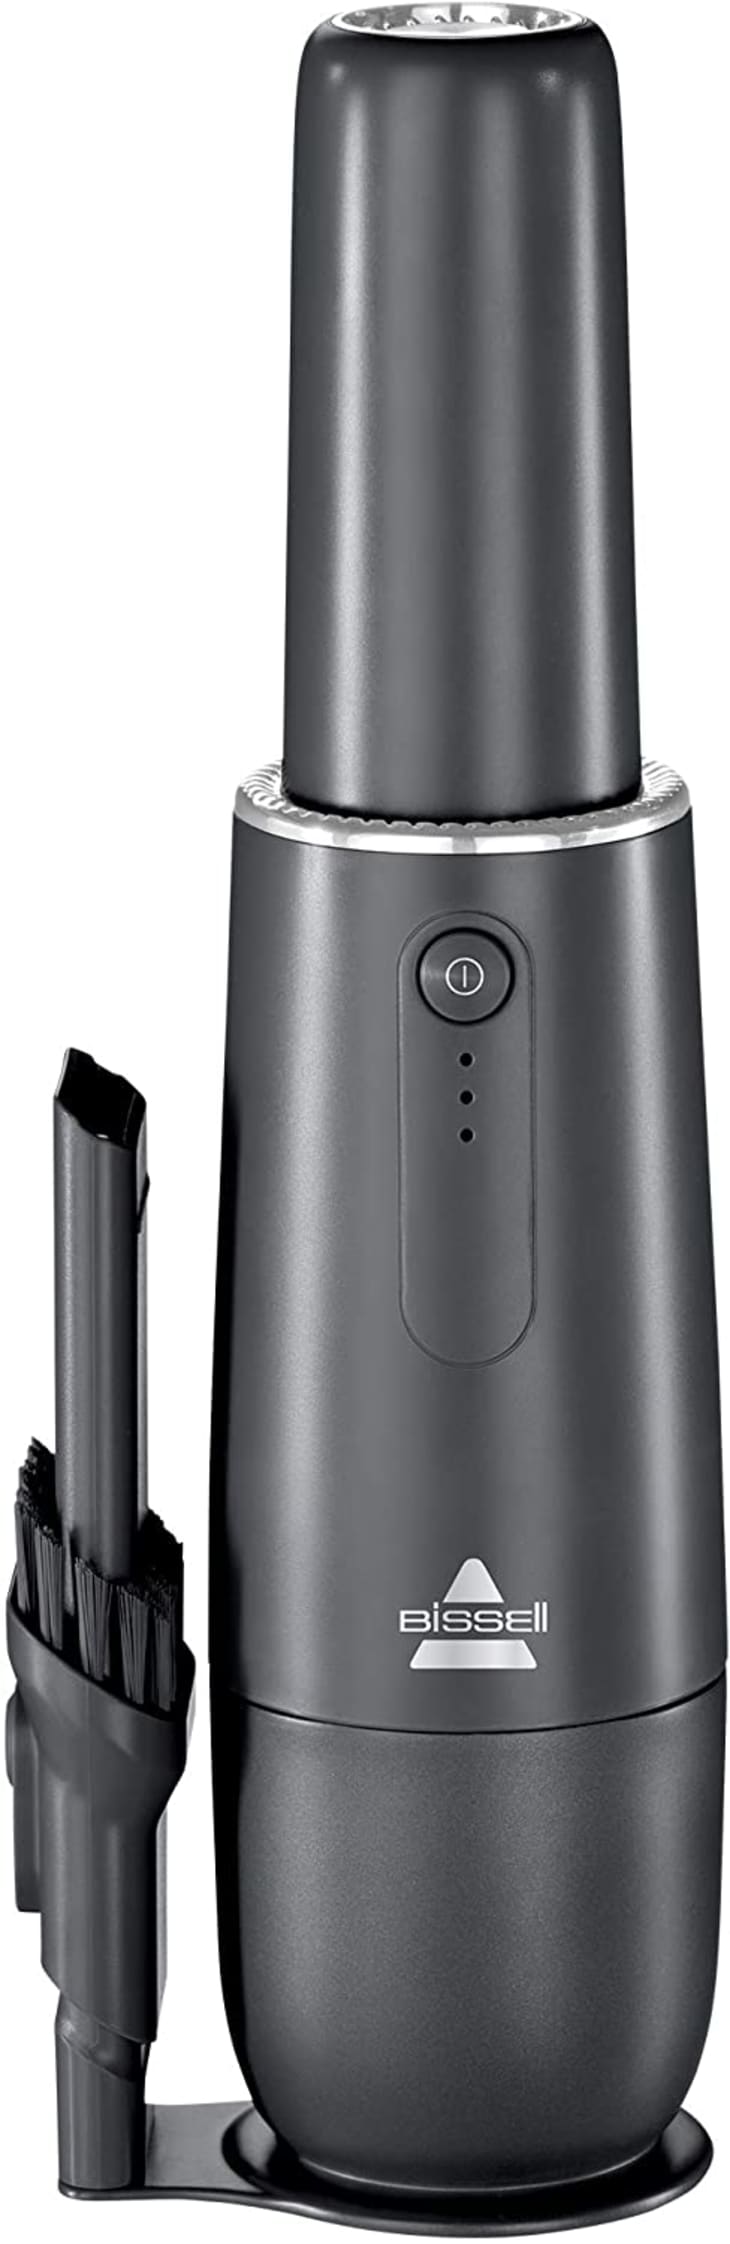 BISSELL AeroSlim Cordless Handheld Vacuum at Amazon